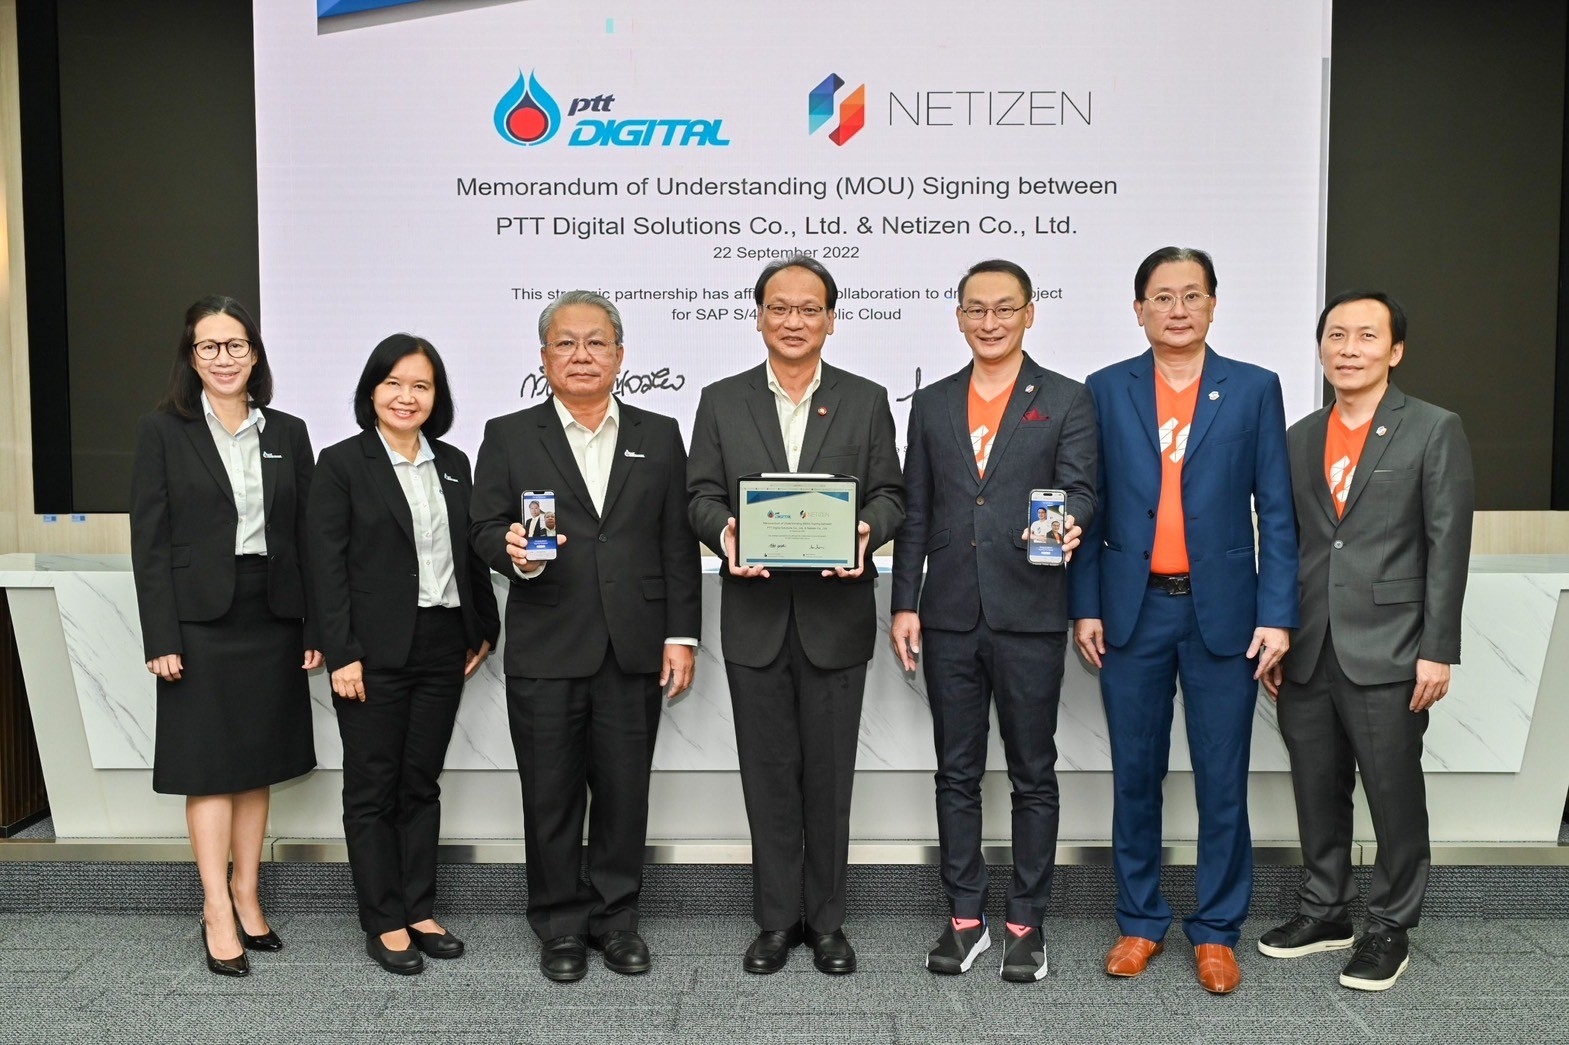 ภาพบรรยากาศงานลงนามบันทึกข้อตกลงความร่วมมือ MOU ระหว่าง Netizen และ PTT Digital Solutions ณ ห้องประชุมพลังไทย อาคาร 1 บริษัท ปตท. จำกัด (มหาชน) สำนักงานใหญ่ วันที่ 22 กันยายน 2565 ที่ผ่านมา